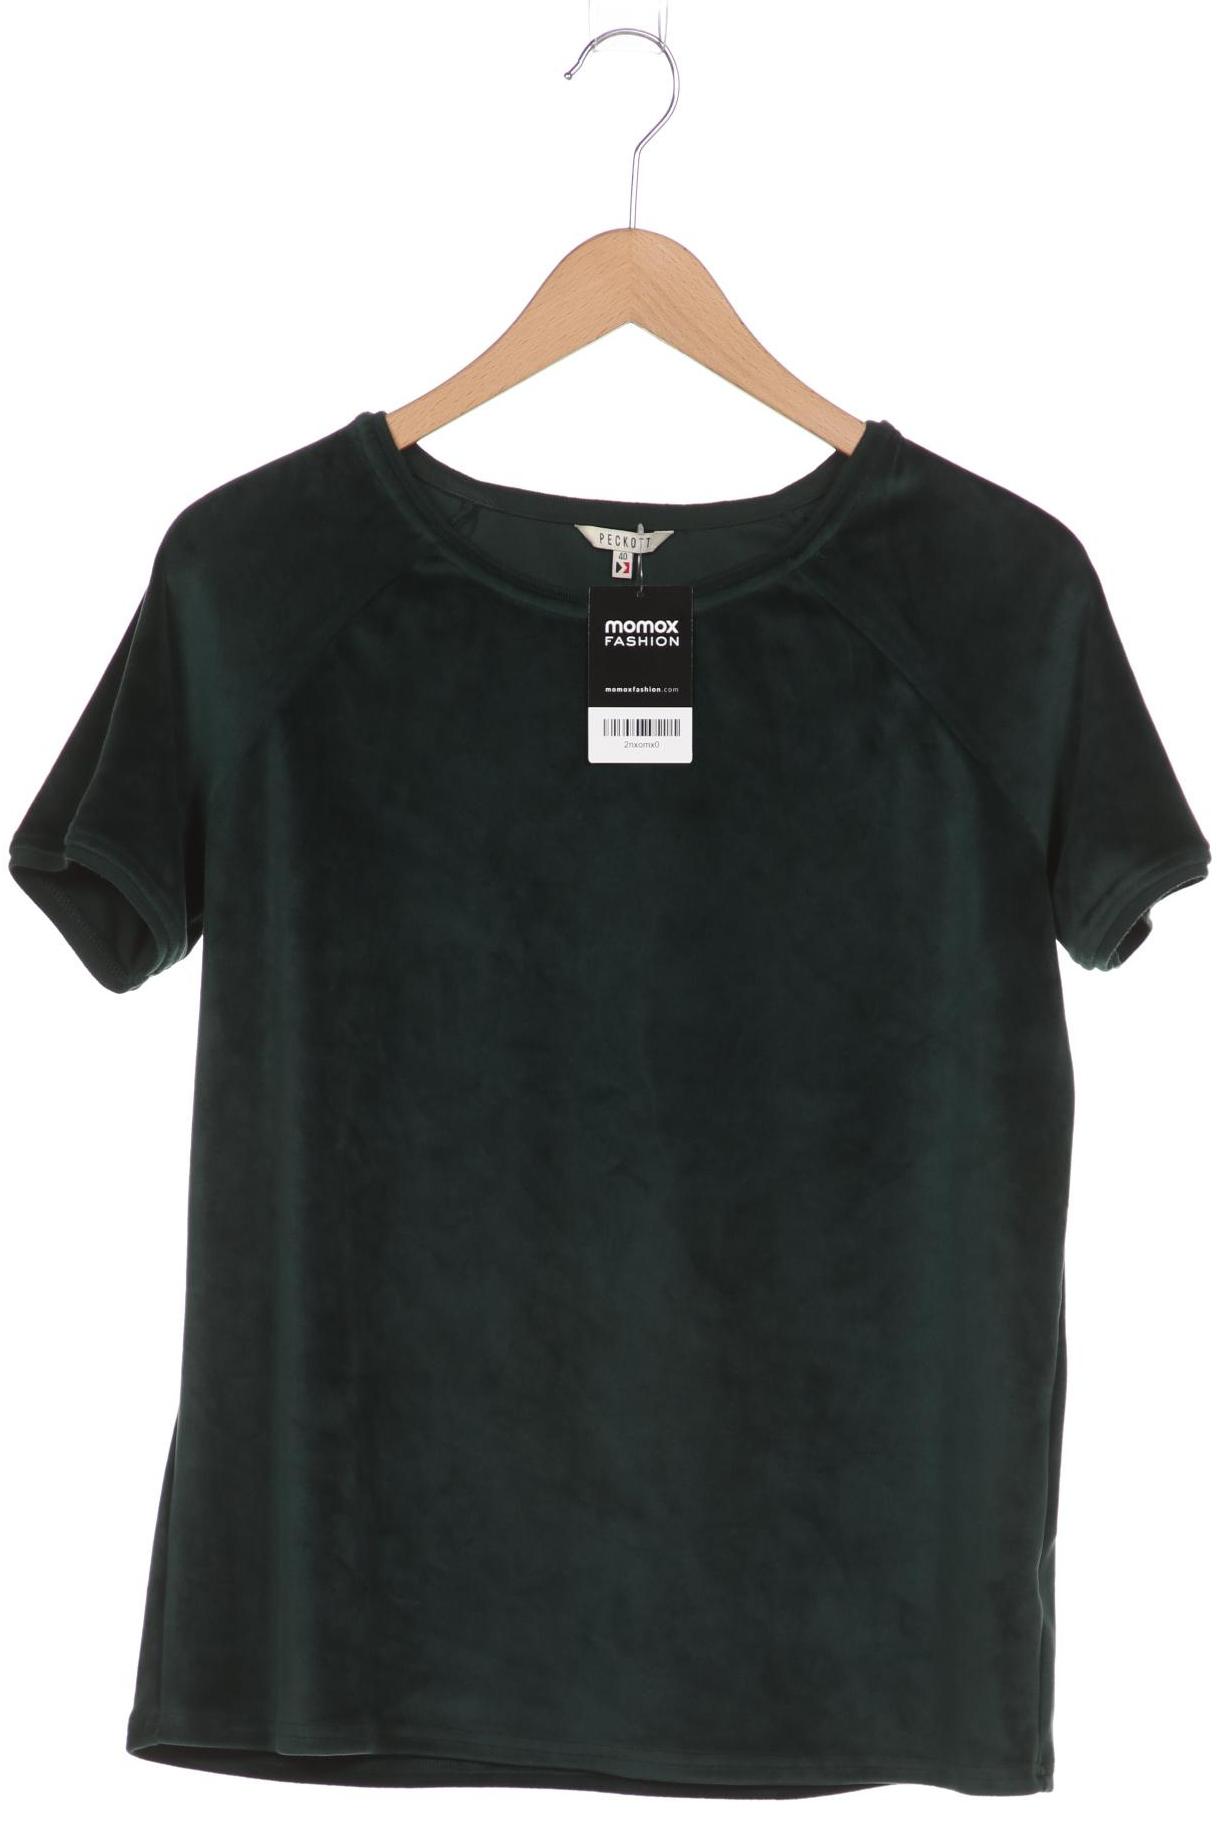 PECKOTT Damen T-Shirt, grün von PECKOTT